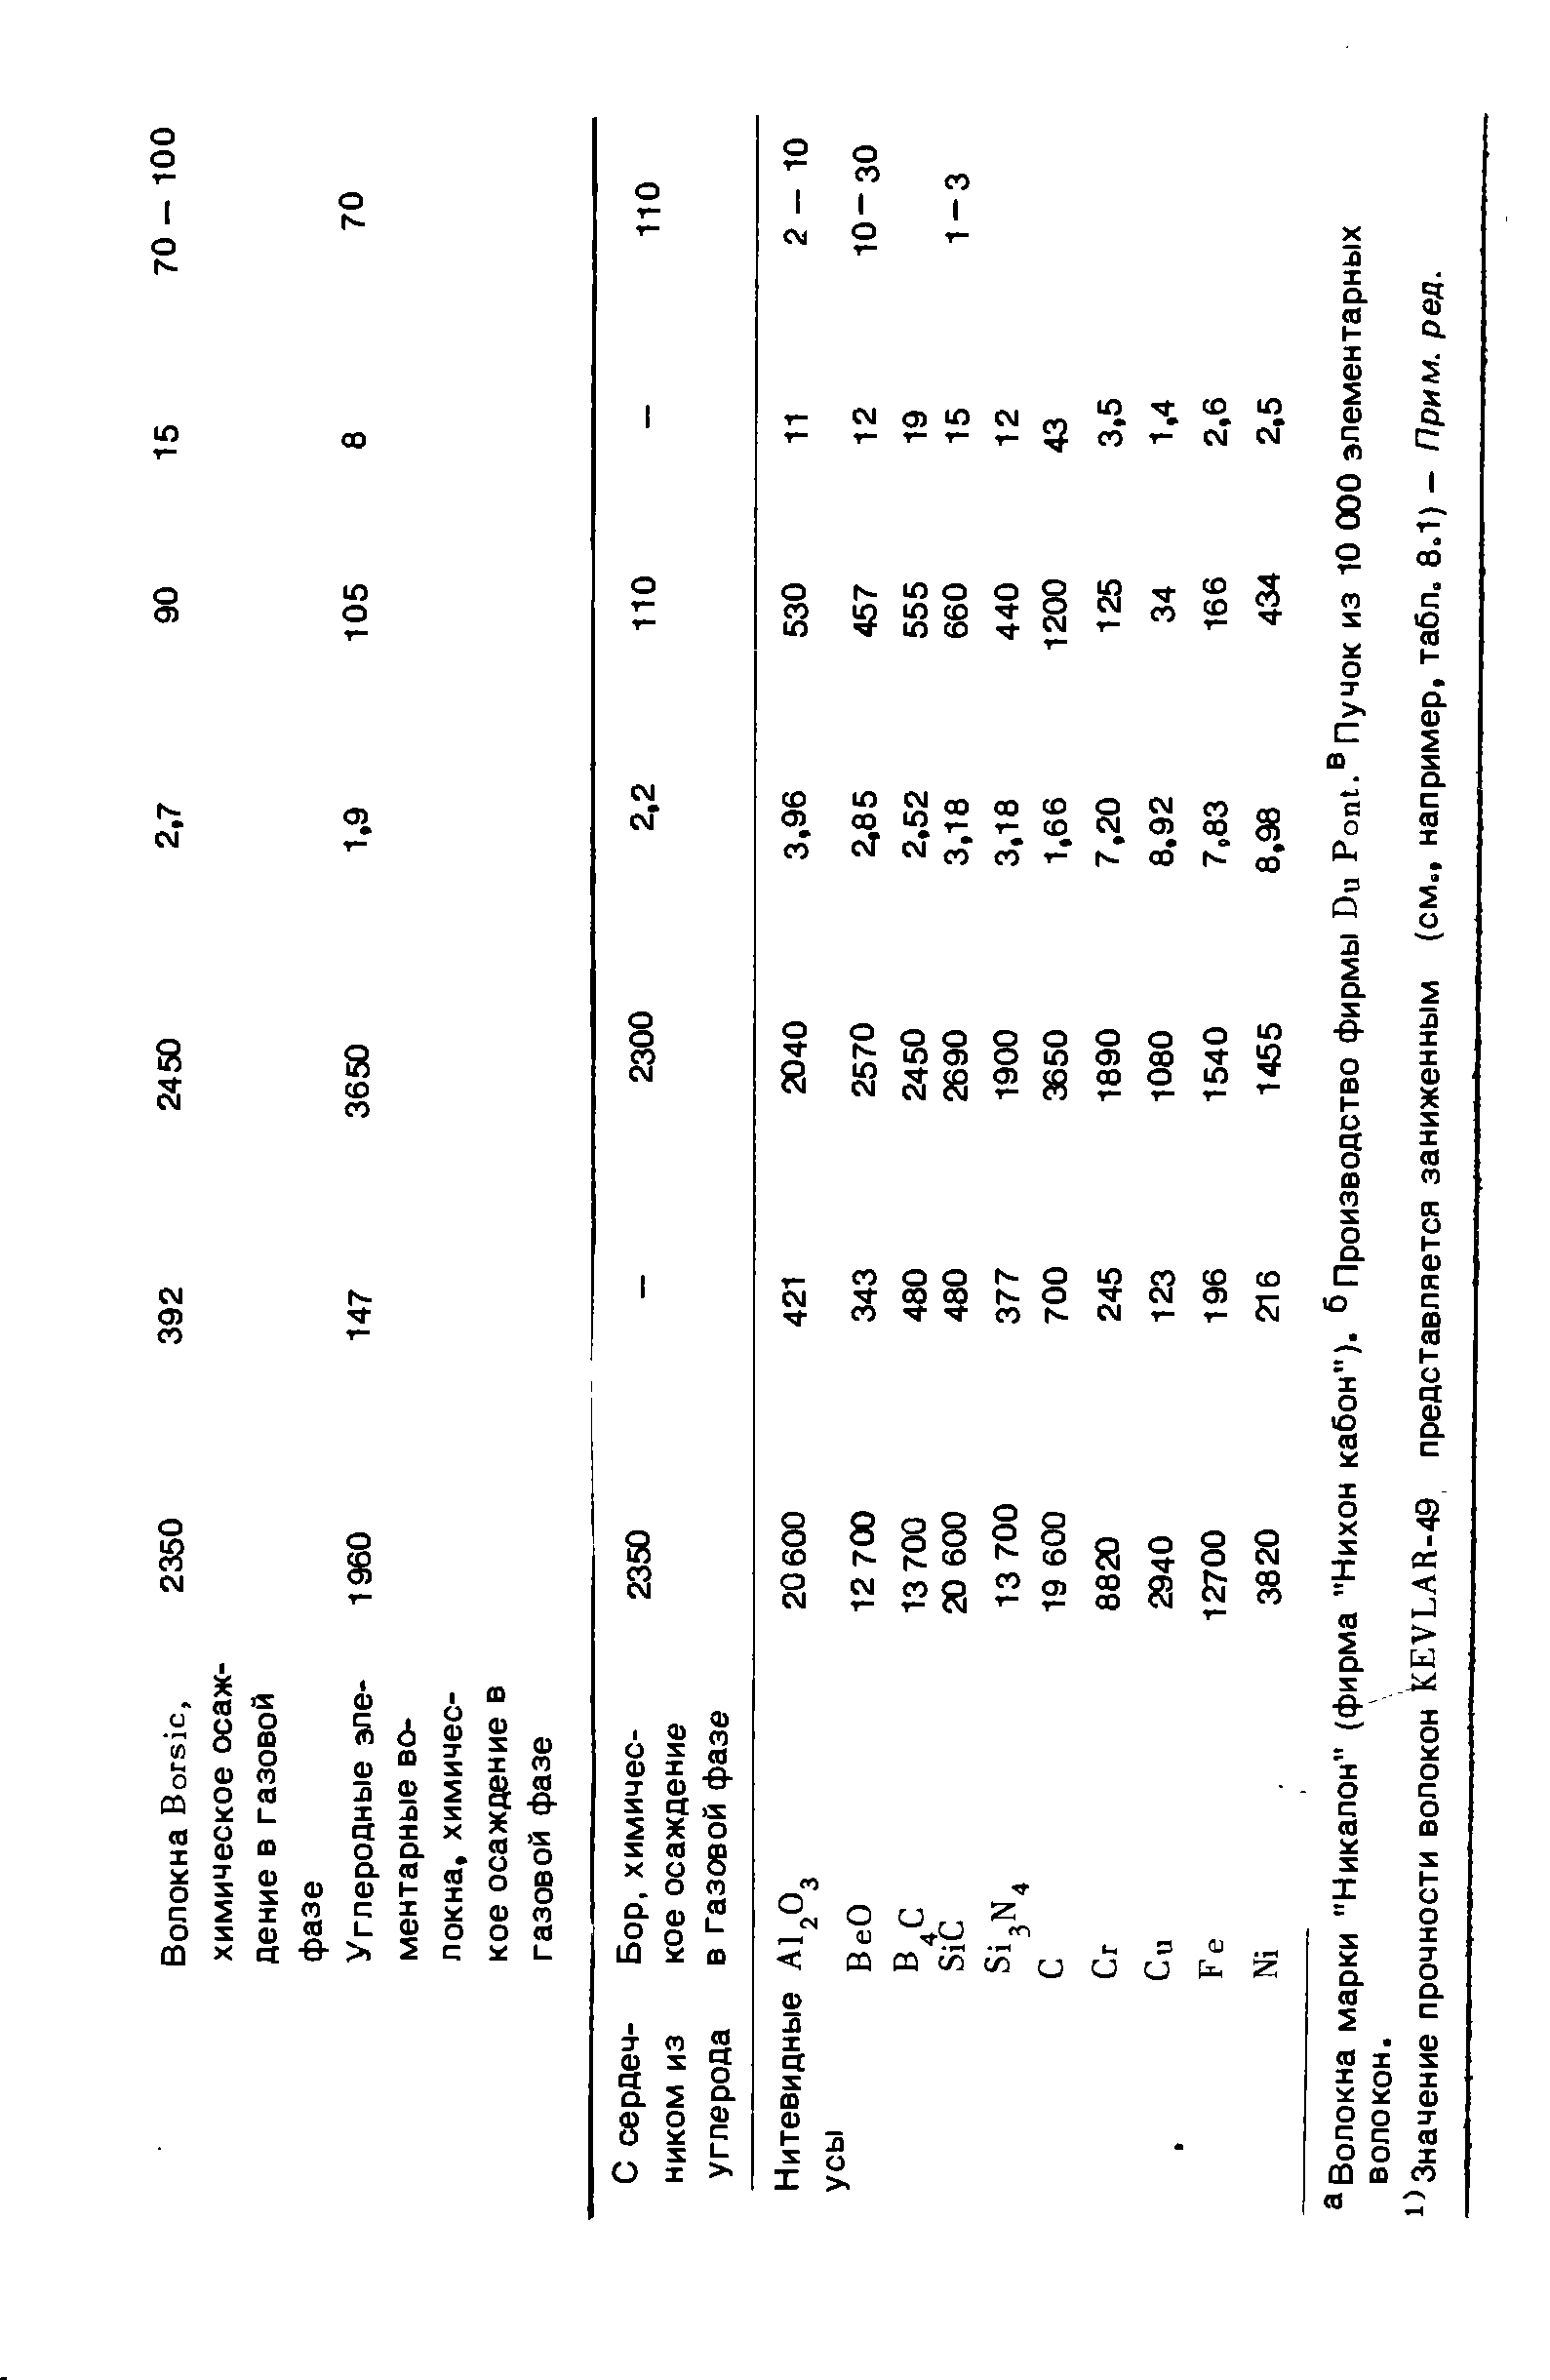 Значение прочности волокон KEVLAR-49 представляется заниженным (см., например, табл. 8.1) - Прим. ред.
